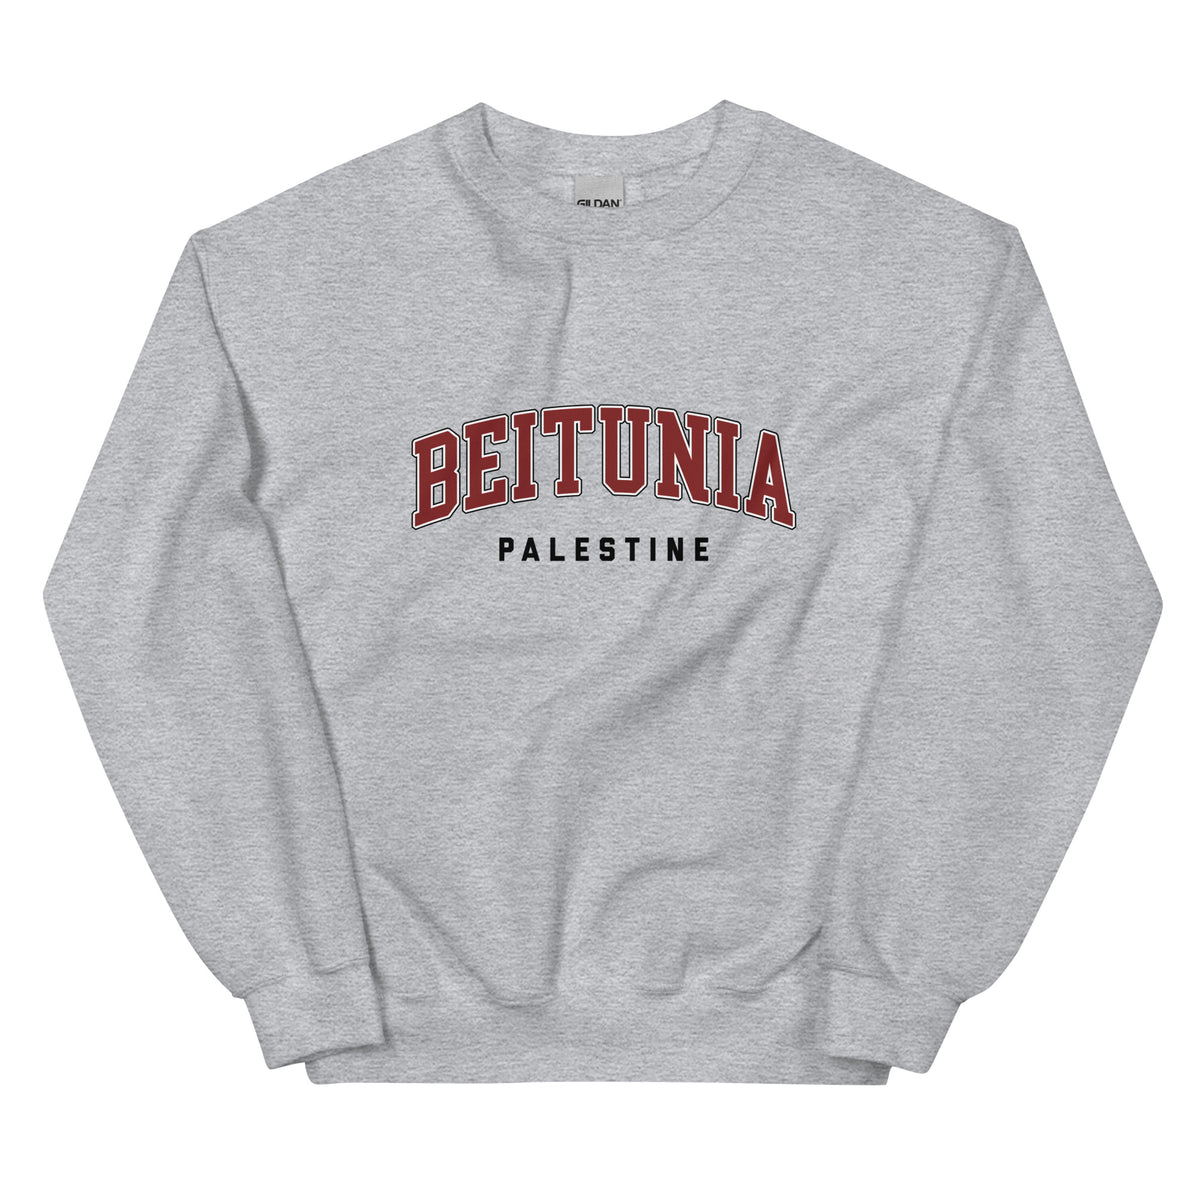 Beitunia, Palestine - Sweatshirt